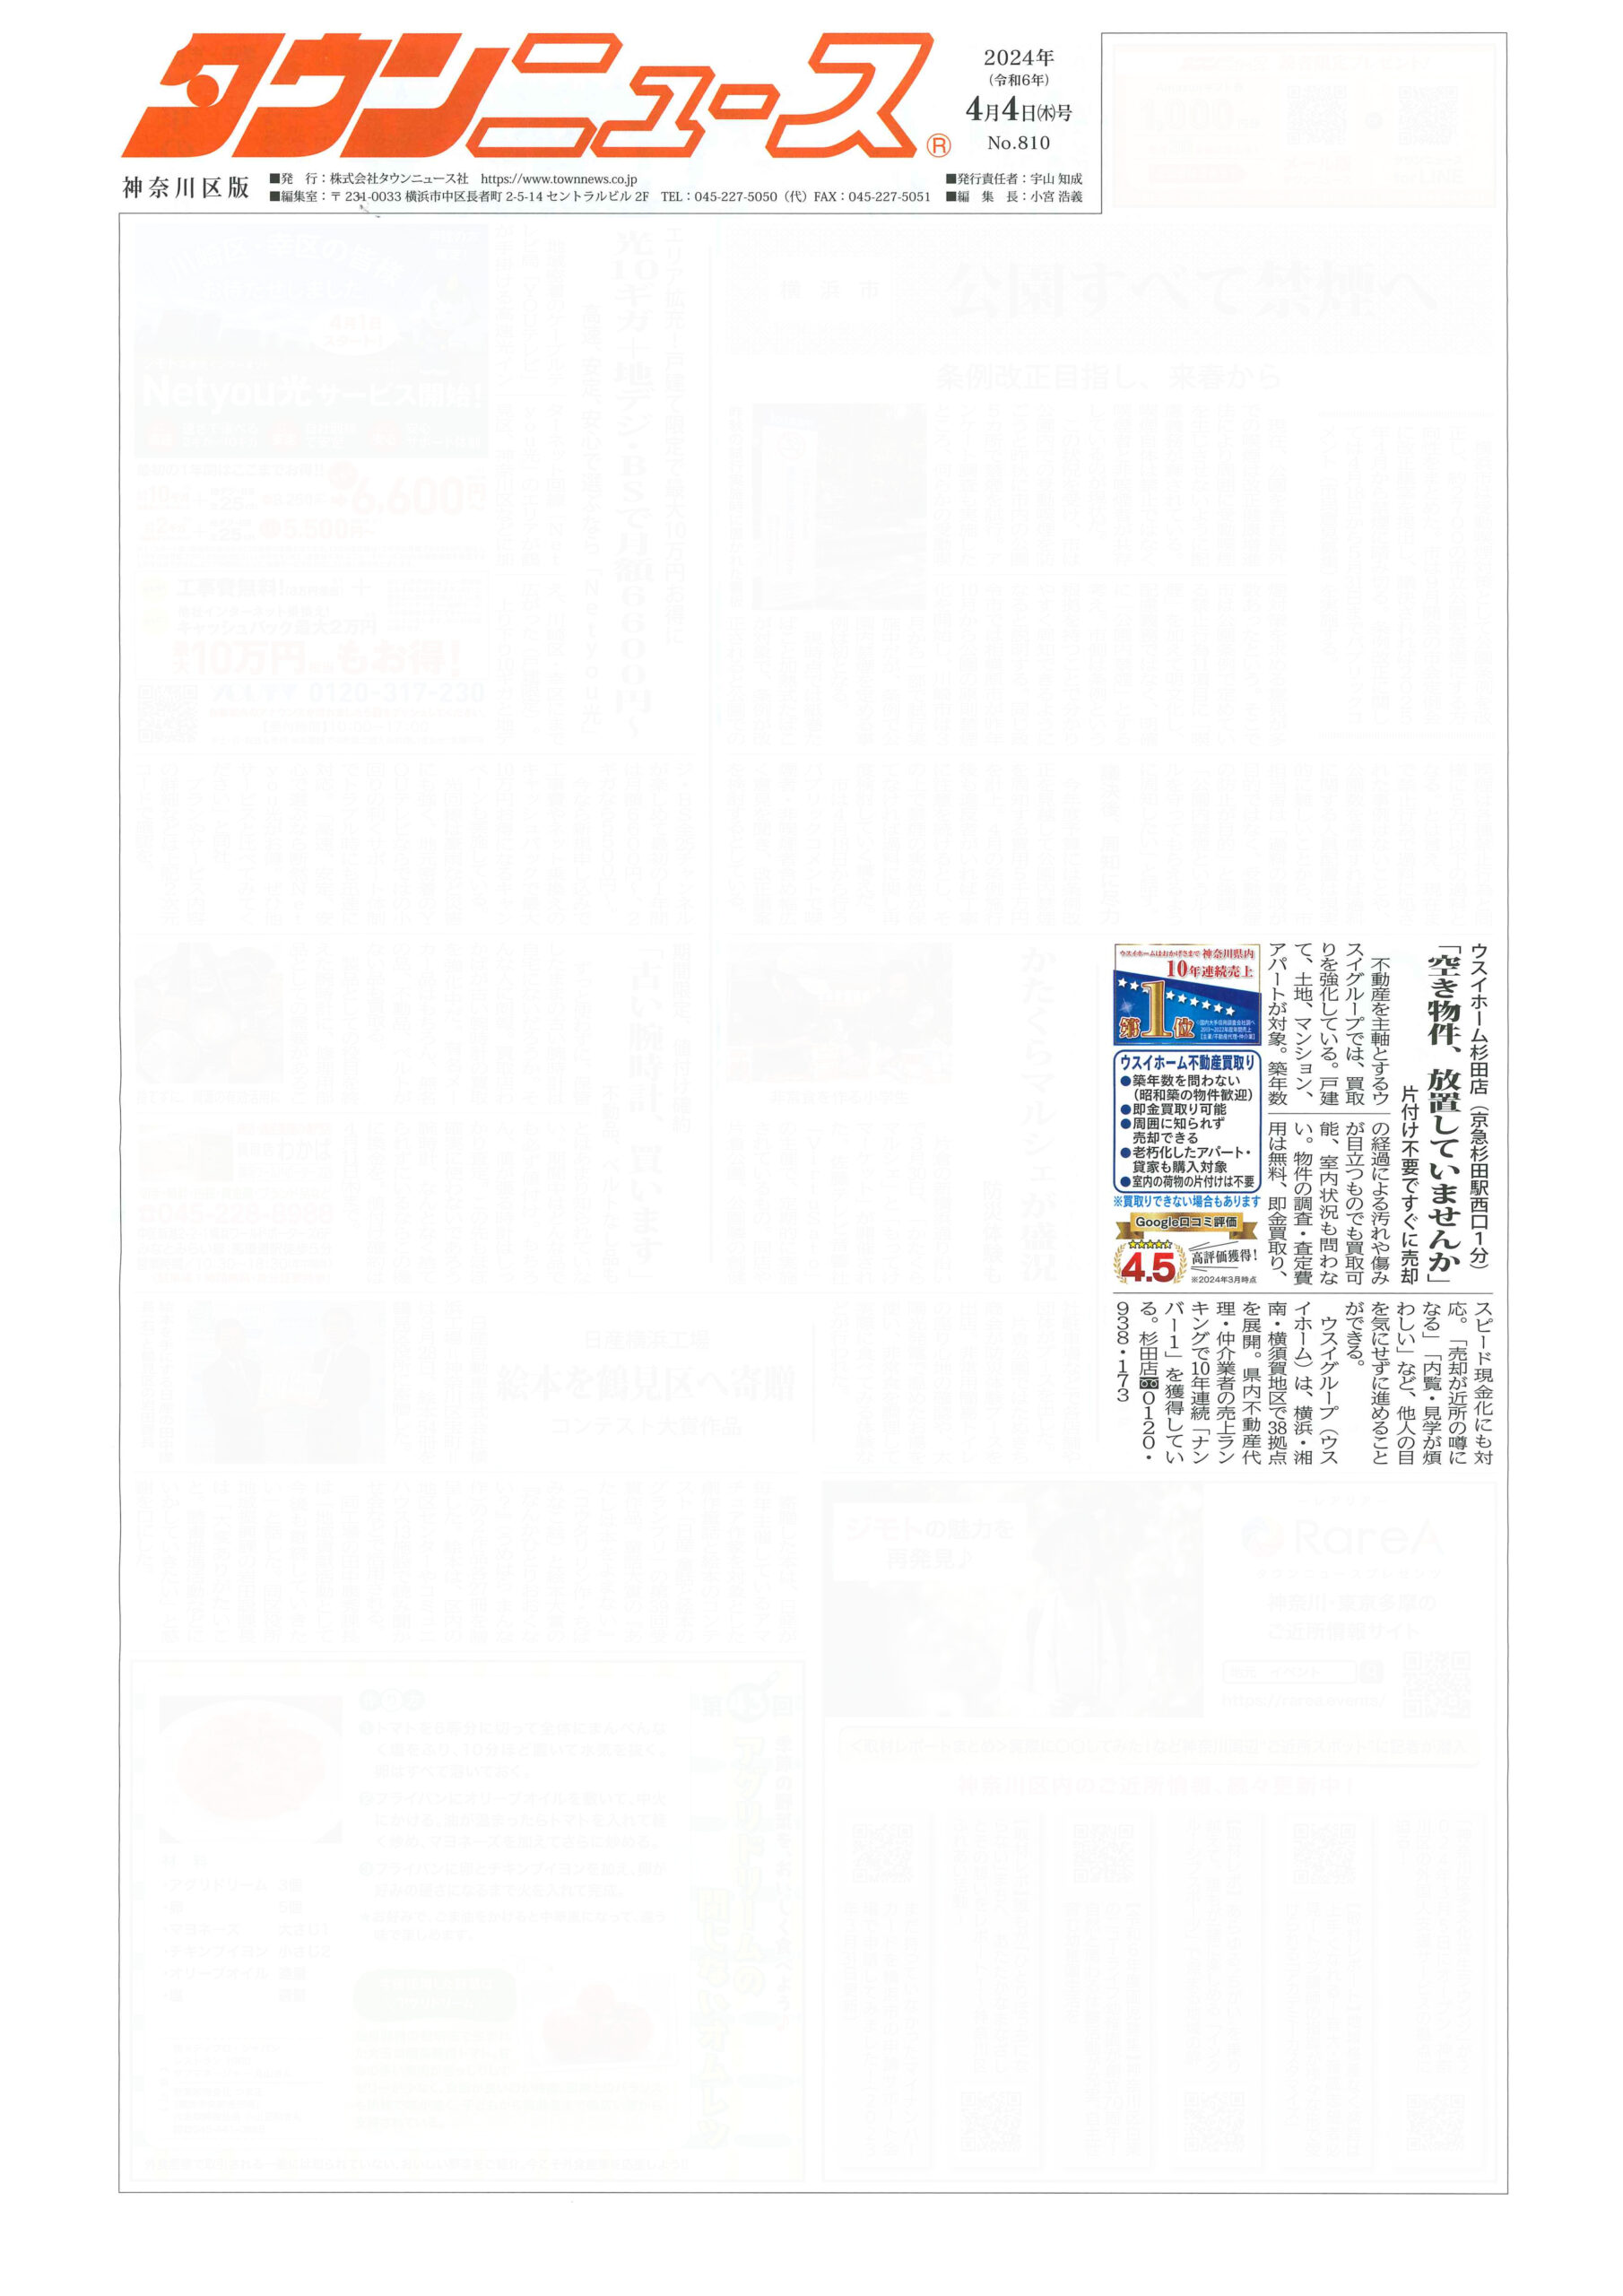 2024.04.04_タウンニュース神奈川区版_ウスイホーム杉田店_不動産買取